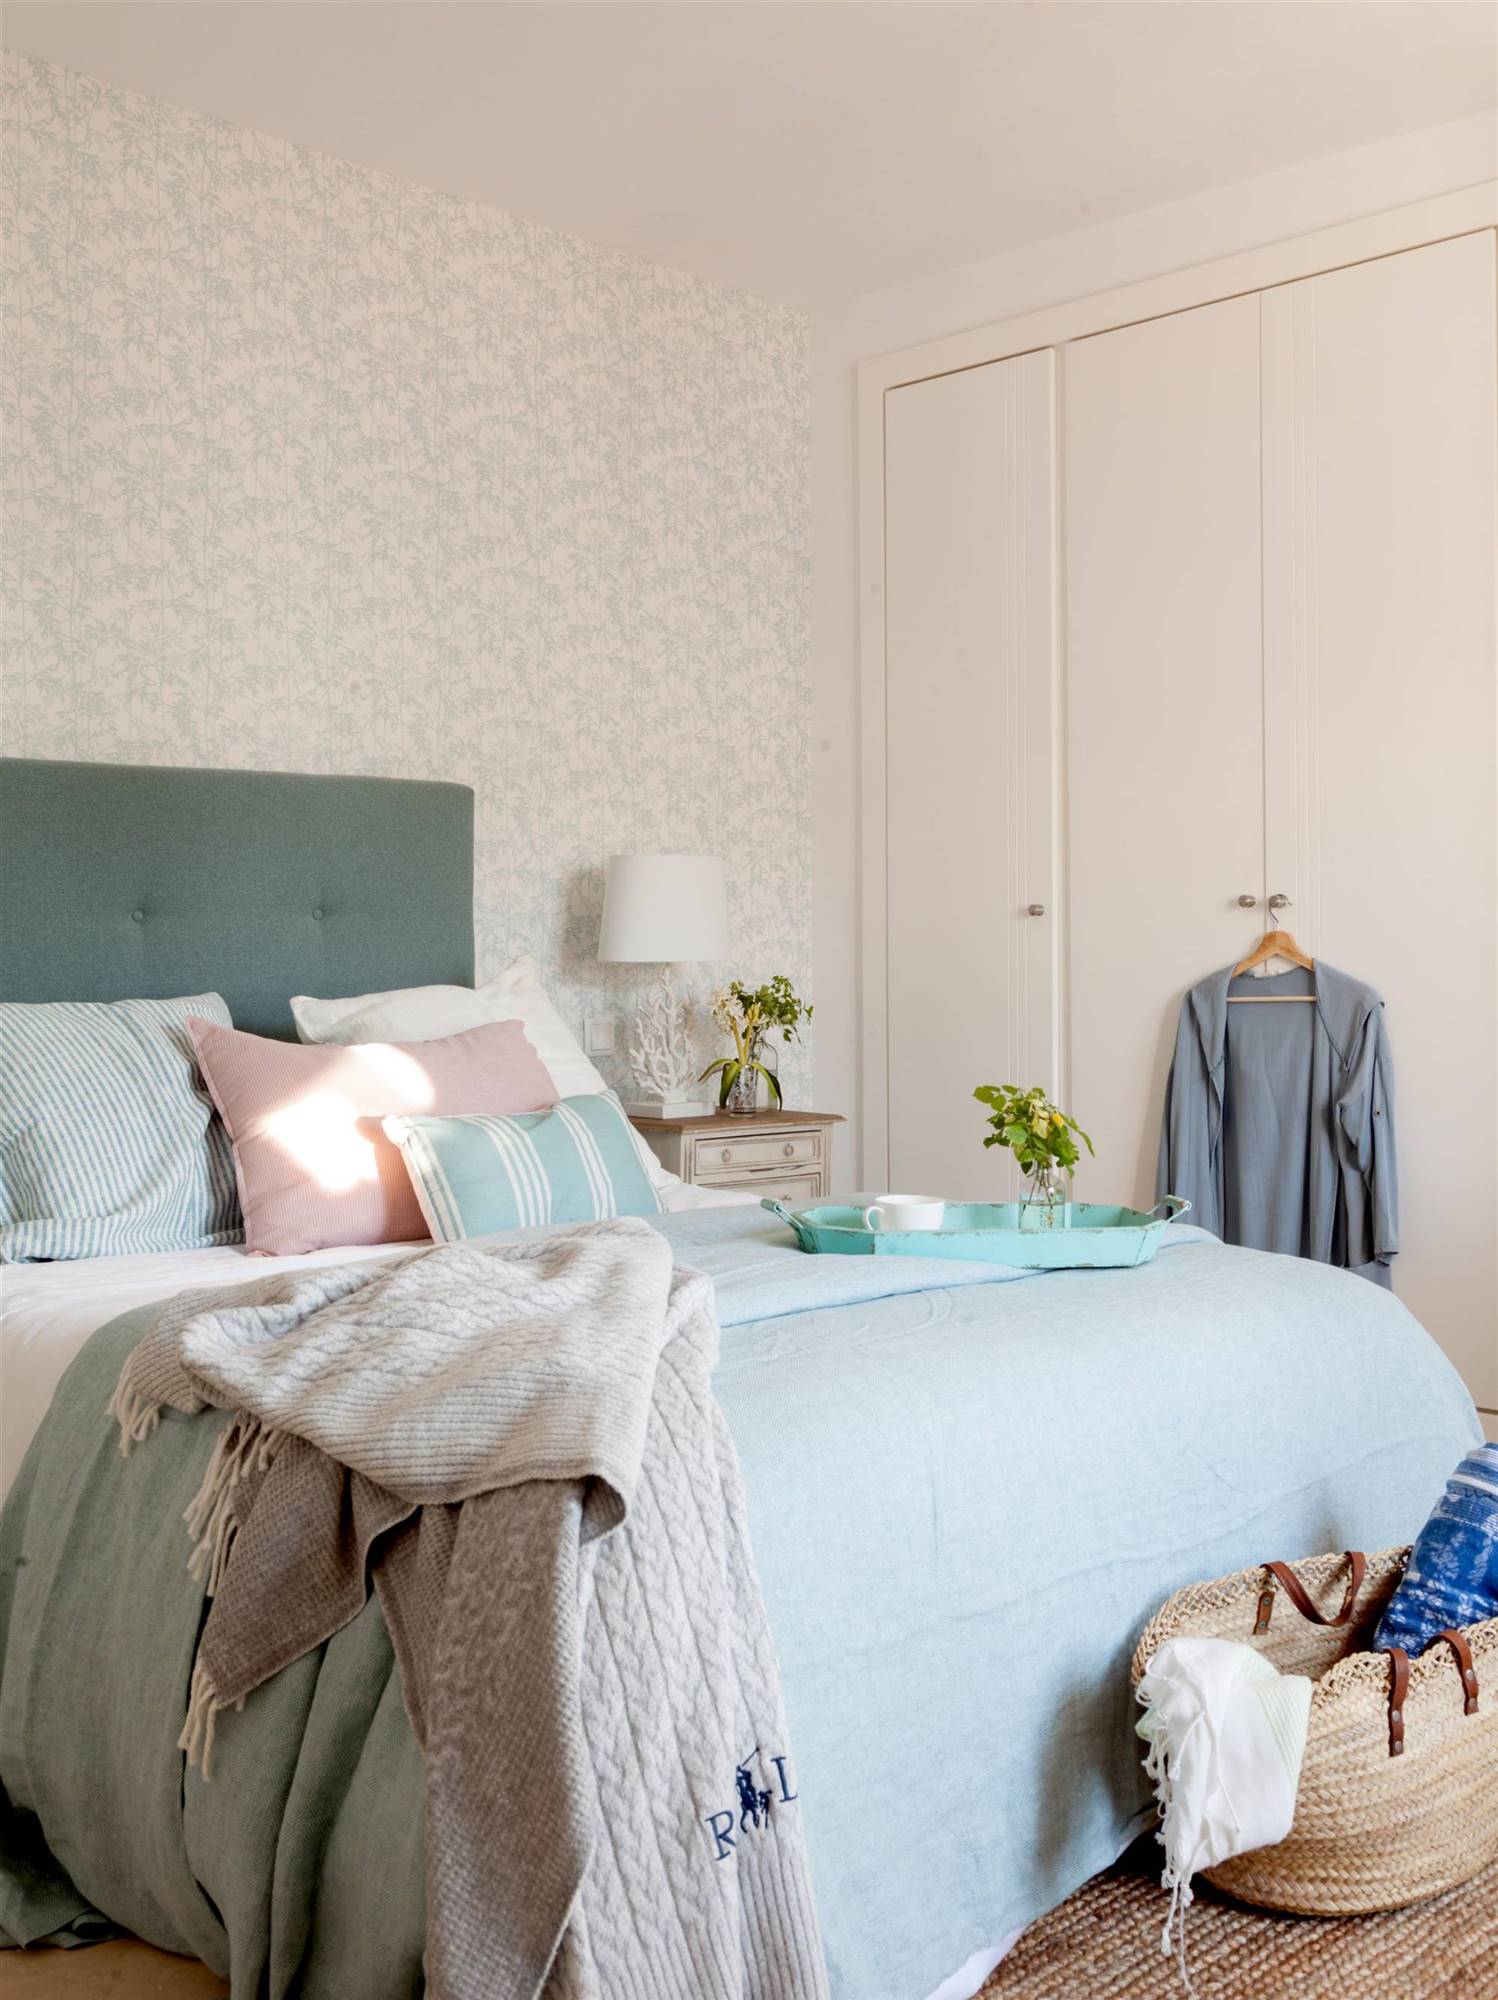 Dormitorio con cabecero en capitoné, papel pintado y armario empotrado.